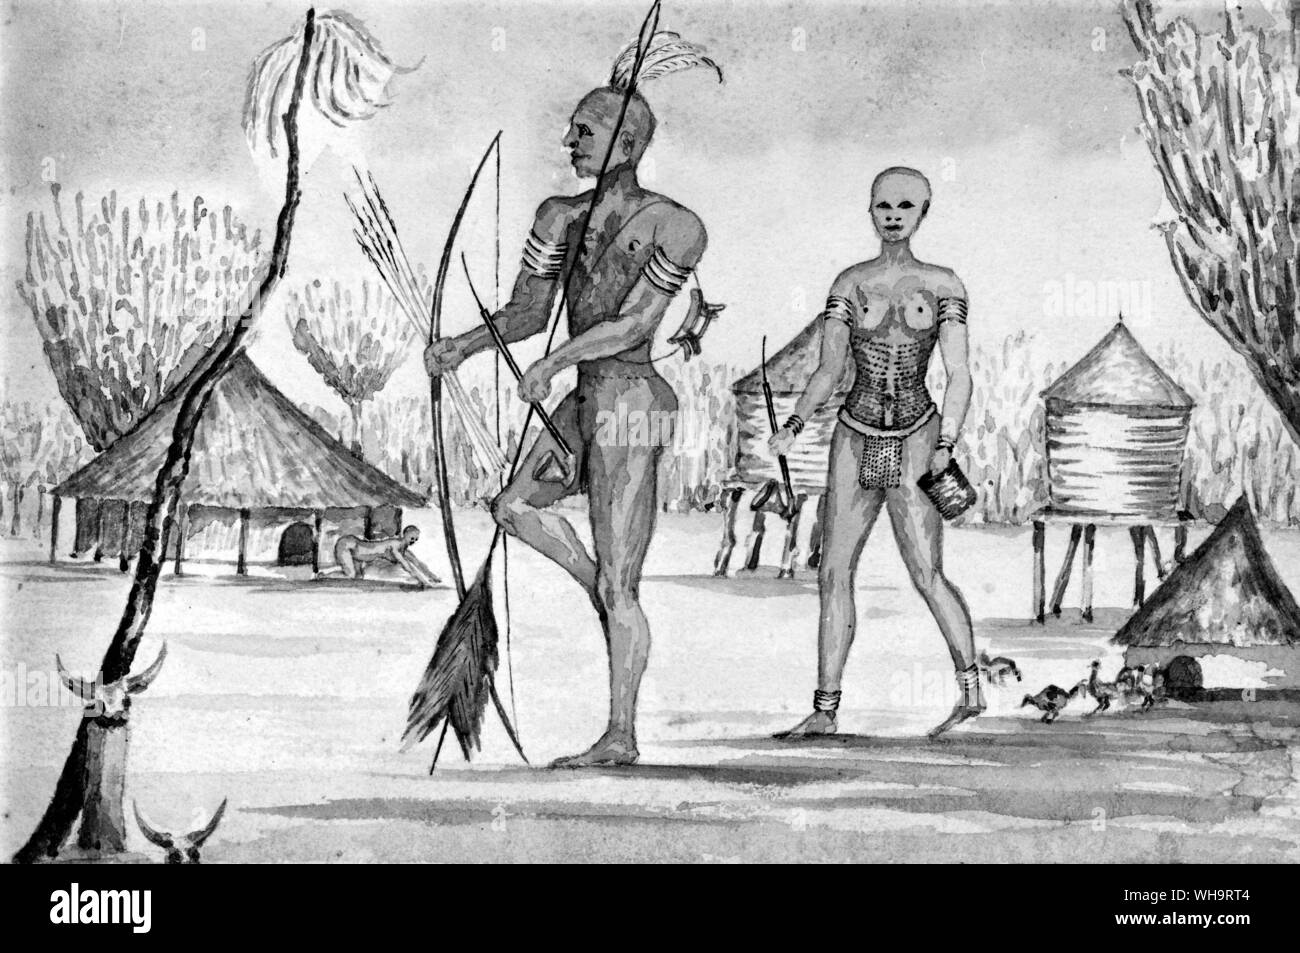 Wasser Farbe von Sir Samuel Baker von "Ismailia', Afrika. Eine Erzählung des Expedition in Zentralafrika zur Unterdrückung des Sklavenhandels. Stockfoto